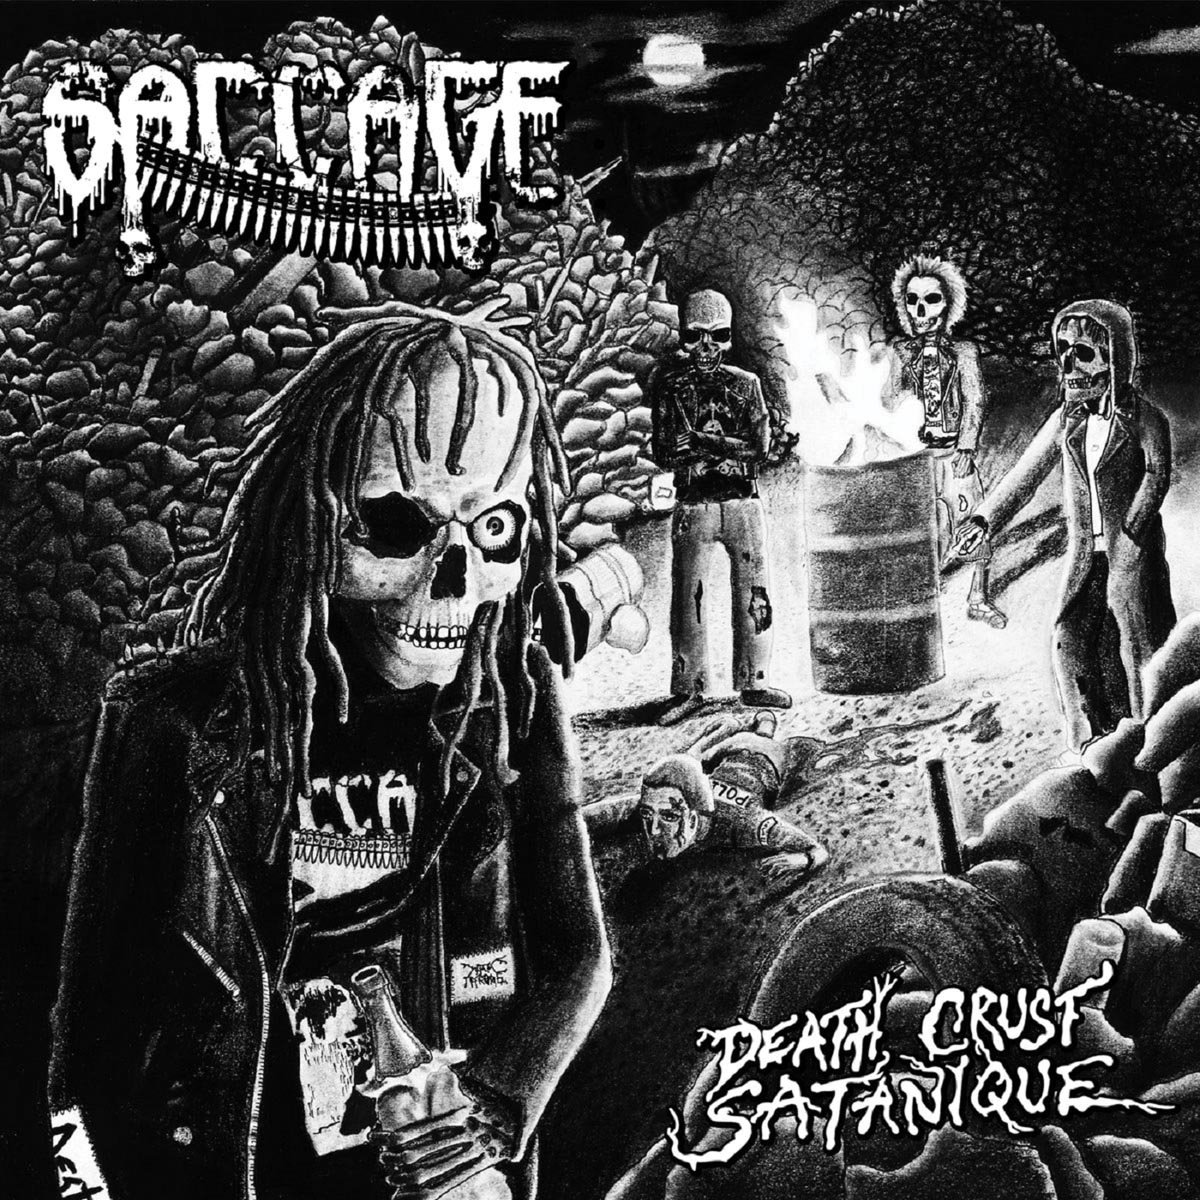 Album associé à la The Master par Steam Brew. Saccage - Death Crust Satanique